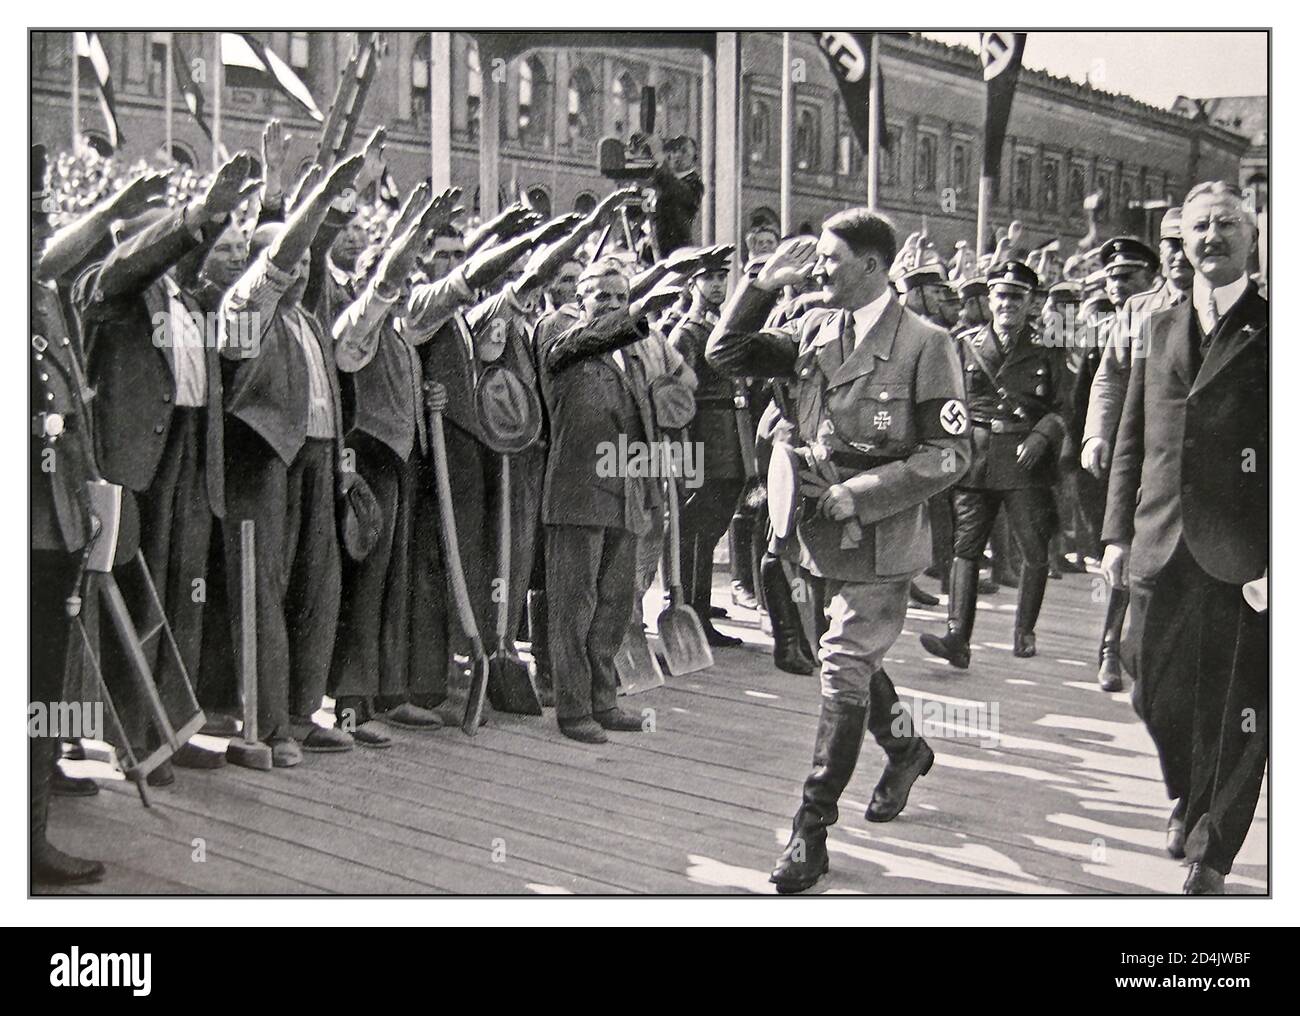 1934 Adolf Hitler in Militäruniform mit Hakenkreuzarmband, Bei der Grundsteinlegung für den Neubau der Deutschen Reichsbank fotografierte Heinrich Hoffmann Adolf Hitler, er war der offizielle Fotograf und Nazi-Politiker und Verleger, der 1934 Mitglied des engen Hitlerkreises war. BERLIN Deutschland Stockfoto